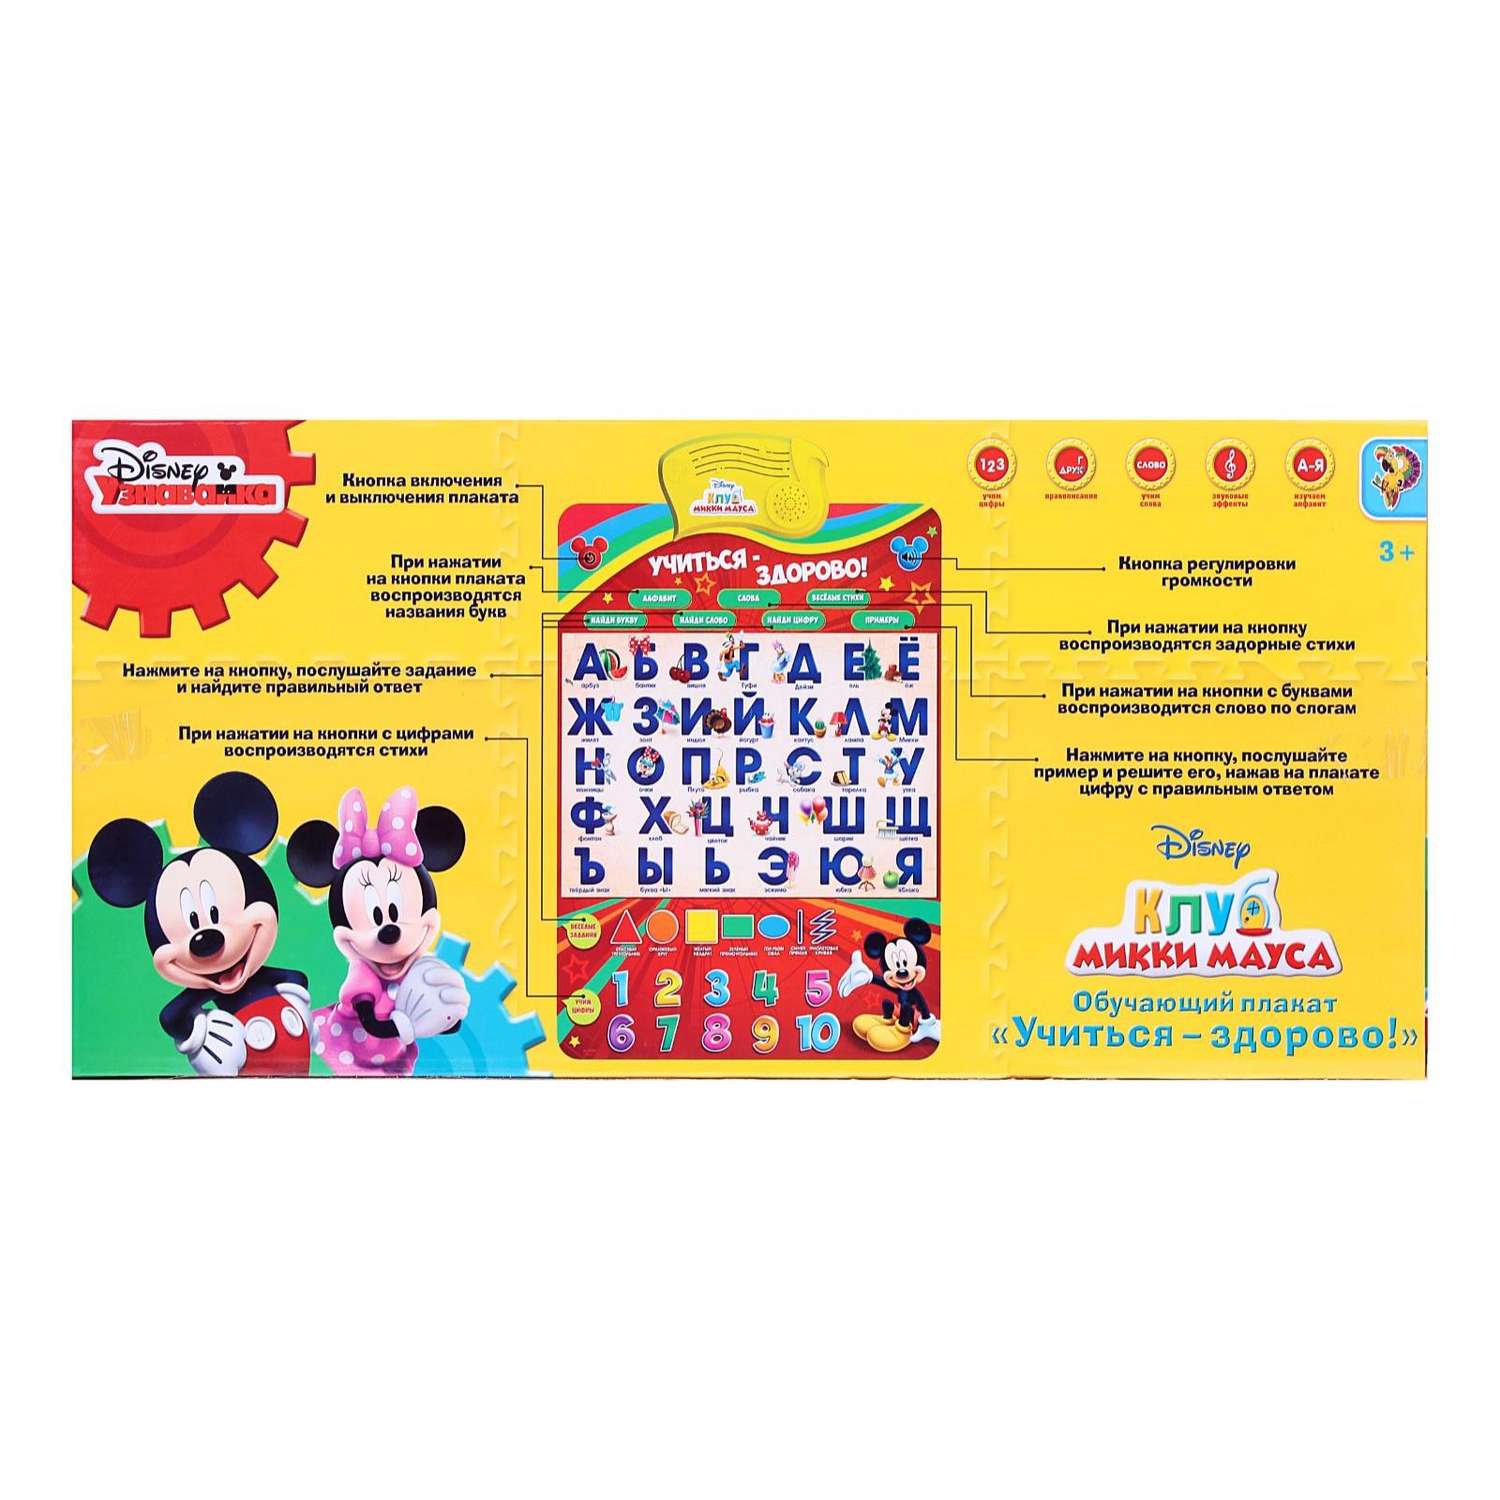 Плакат Disney электронный « Микки Маус и друзья: Учиться-здорово!». русская озвучка - фото 6